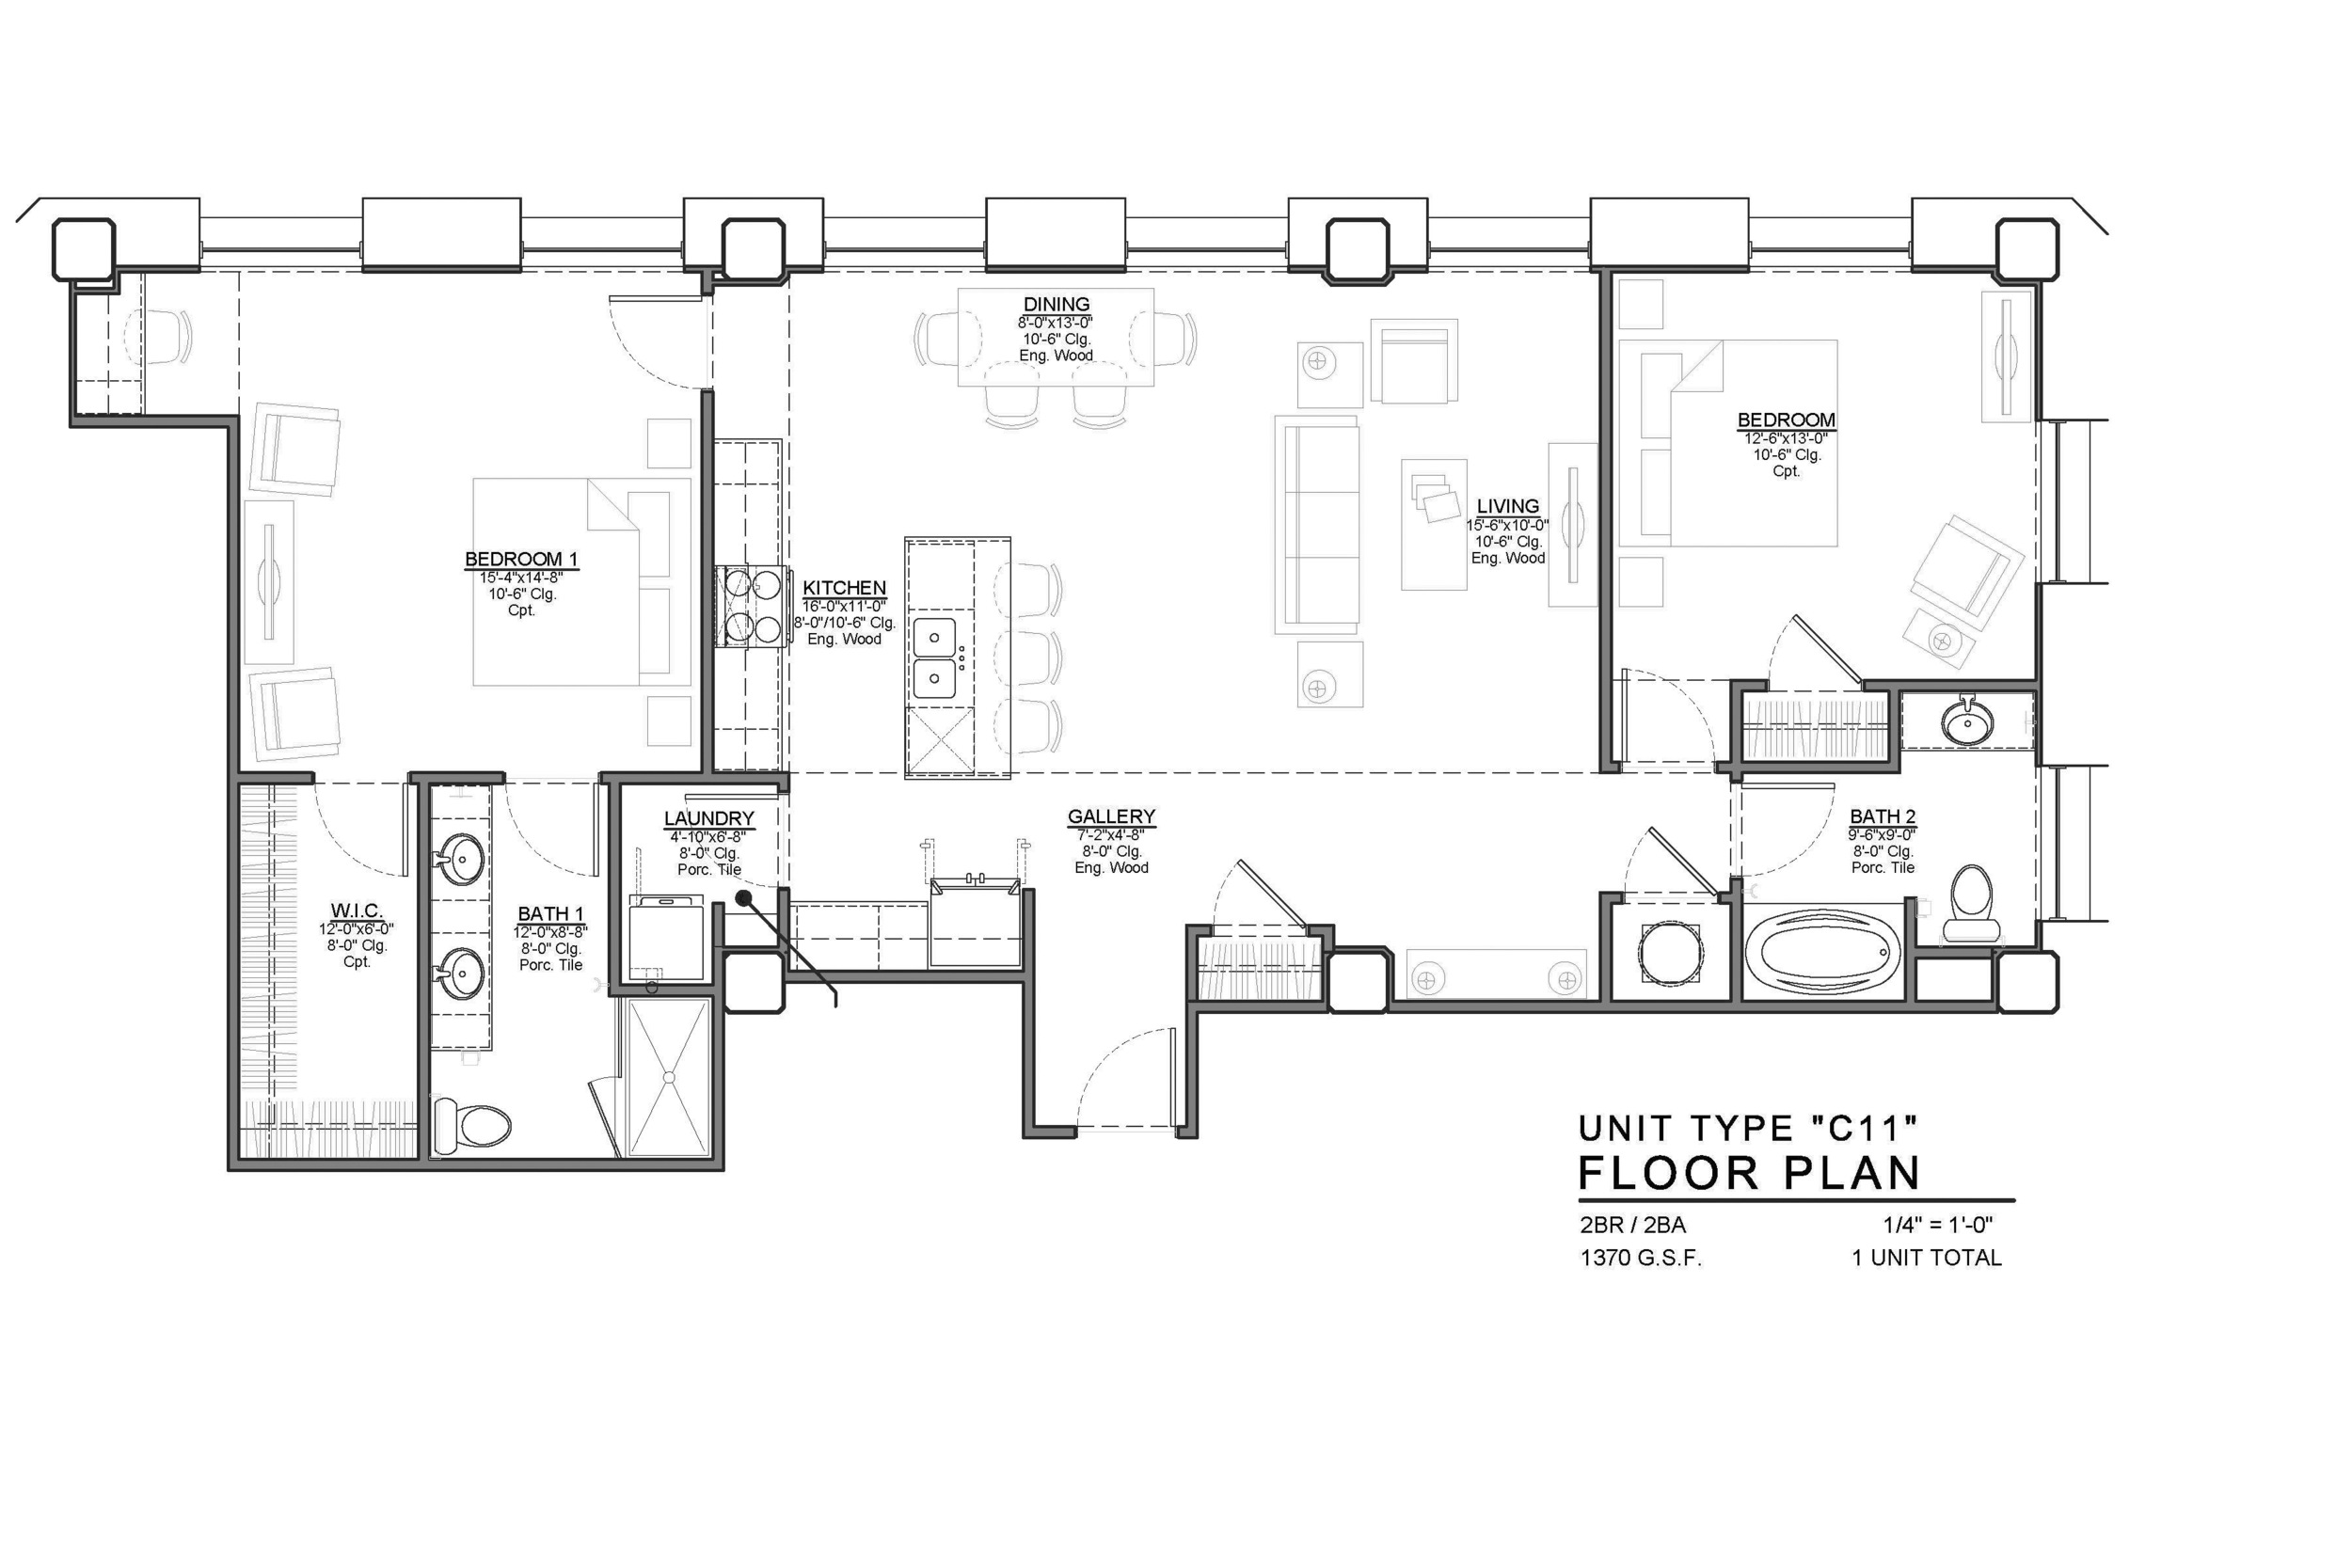 C11 FLOOR PLAN: 2 BEDROOM / 2 BATH